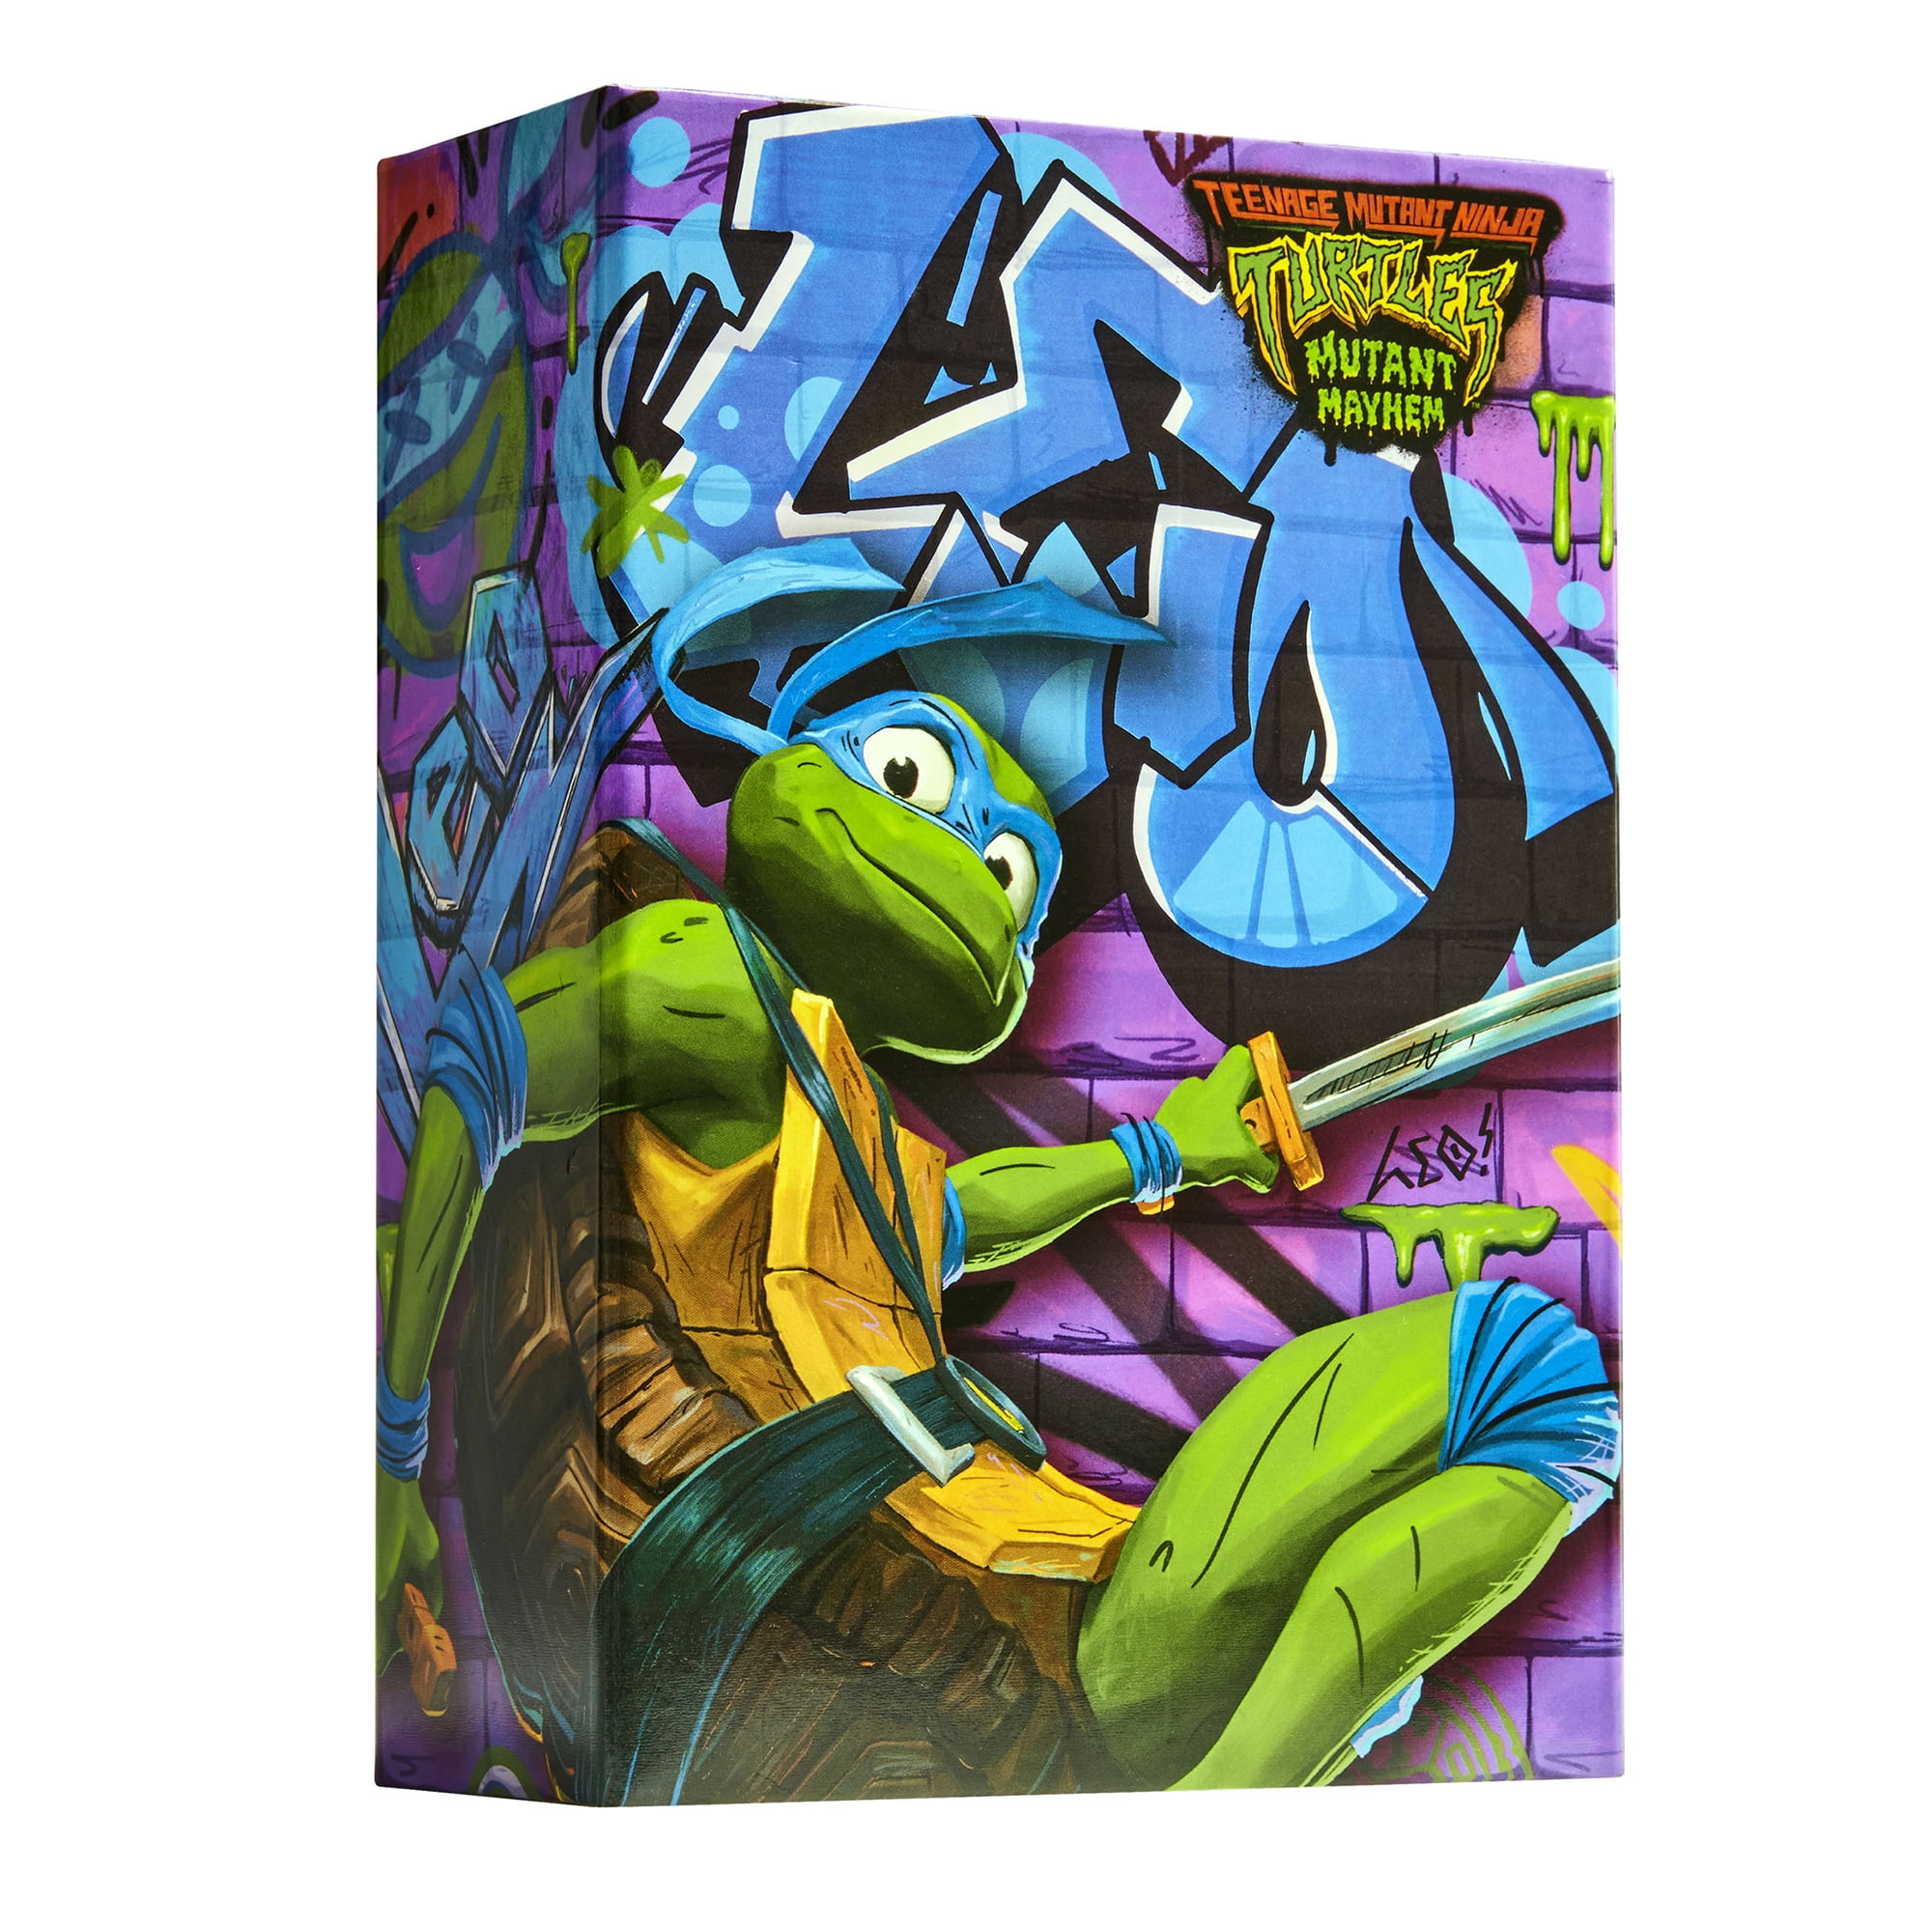 Teenage Mutant Ninja Turtles: Mutant Mayhem 4.5” Leonardo Basic Action  Figure by Playmates Toys